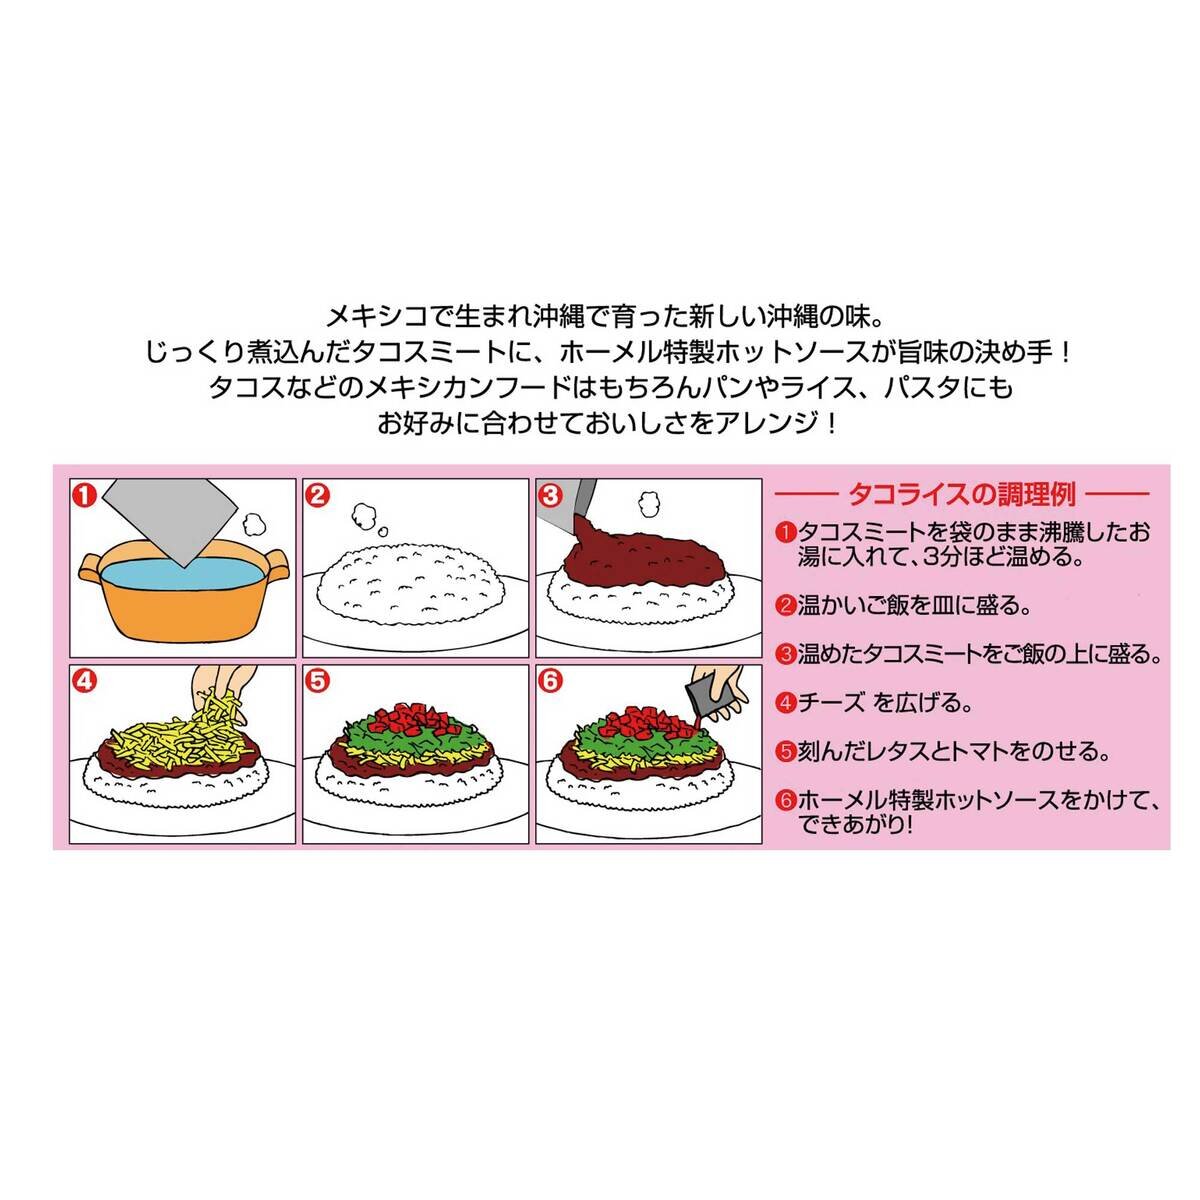 沖縄ホーメル タコライス 12食入り Costco Japan